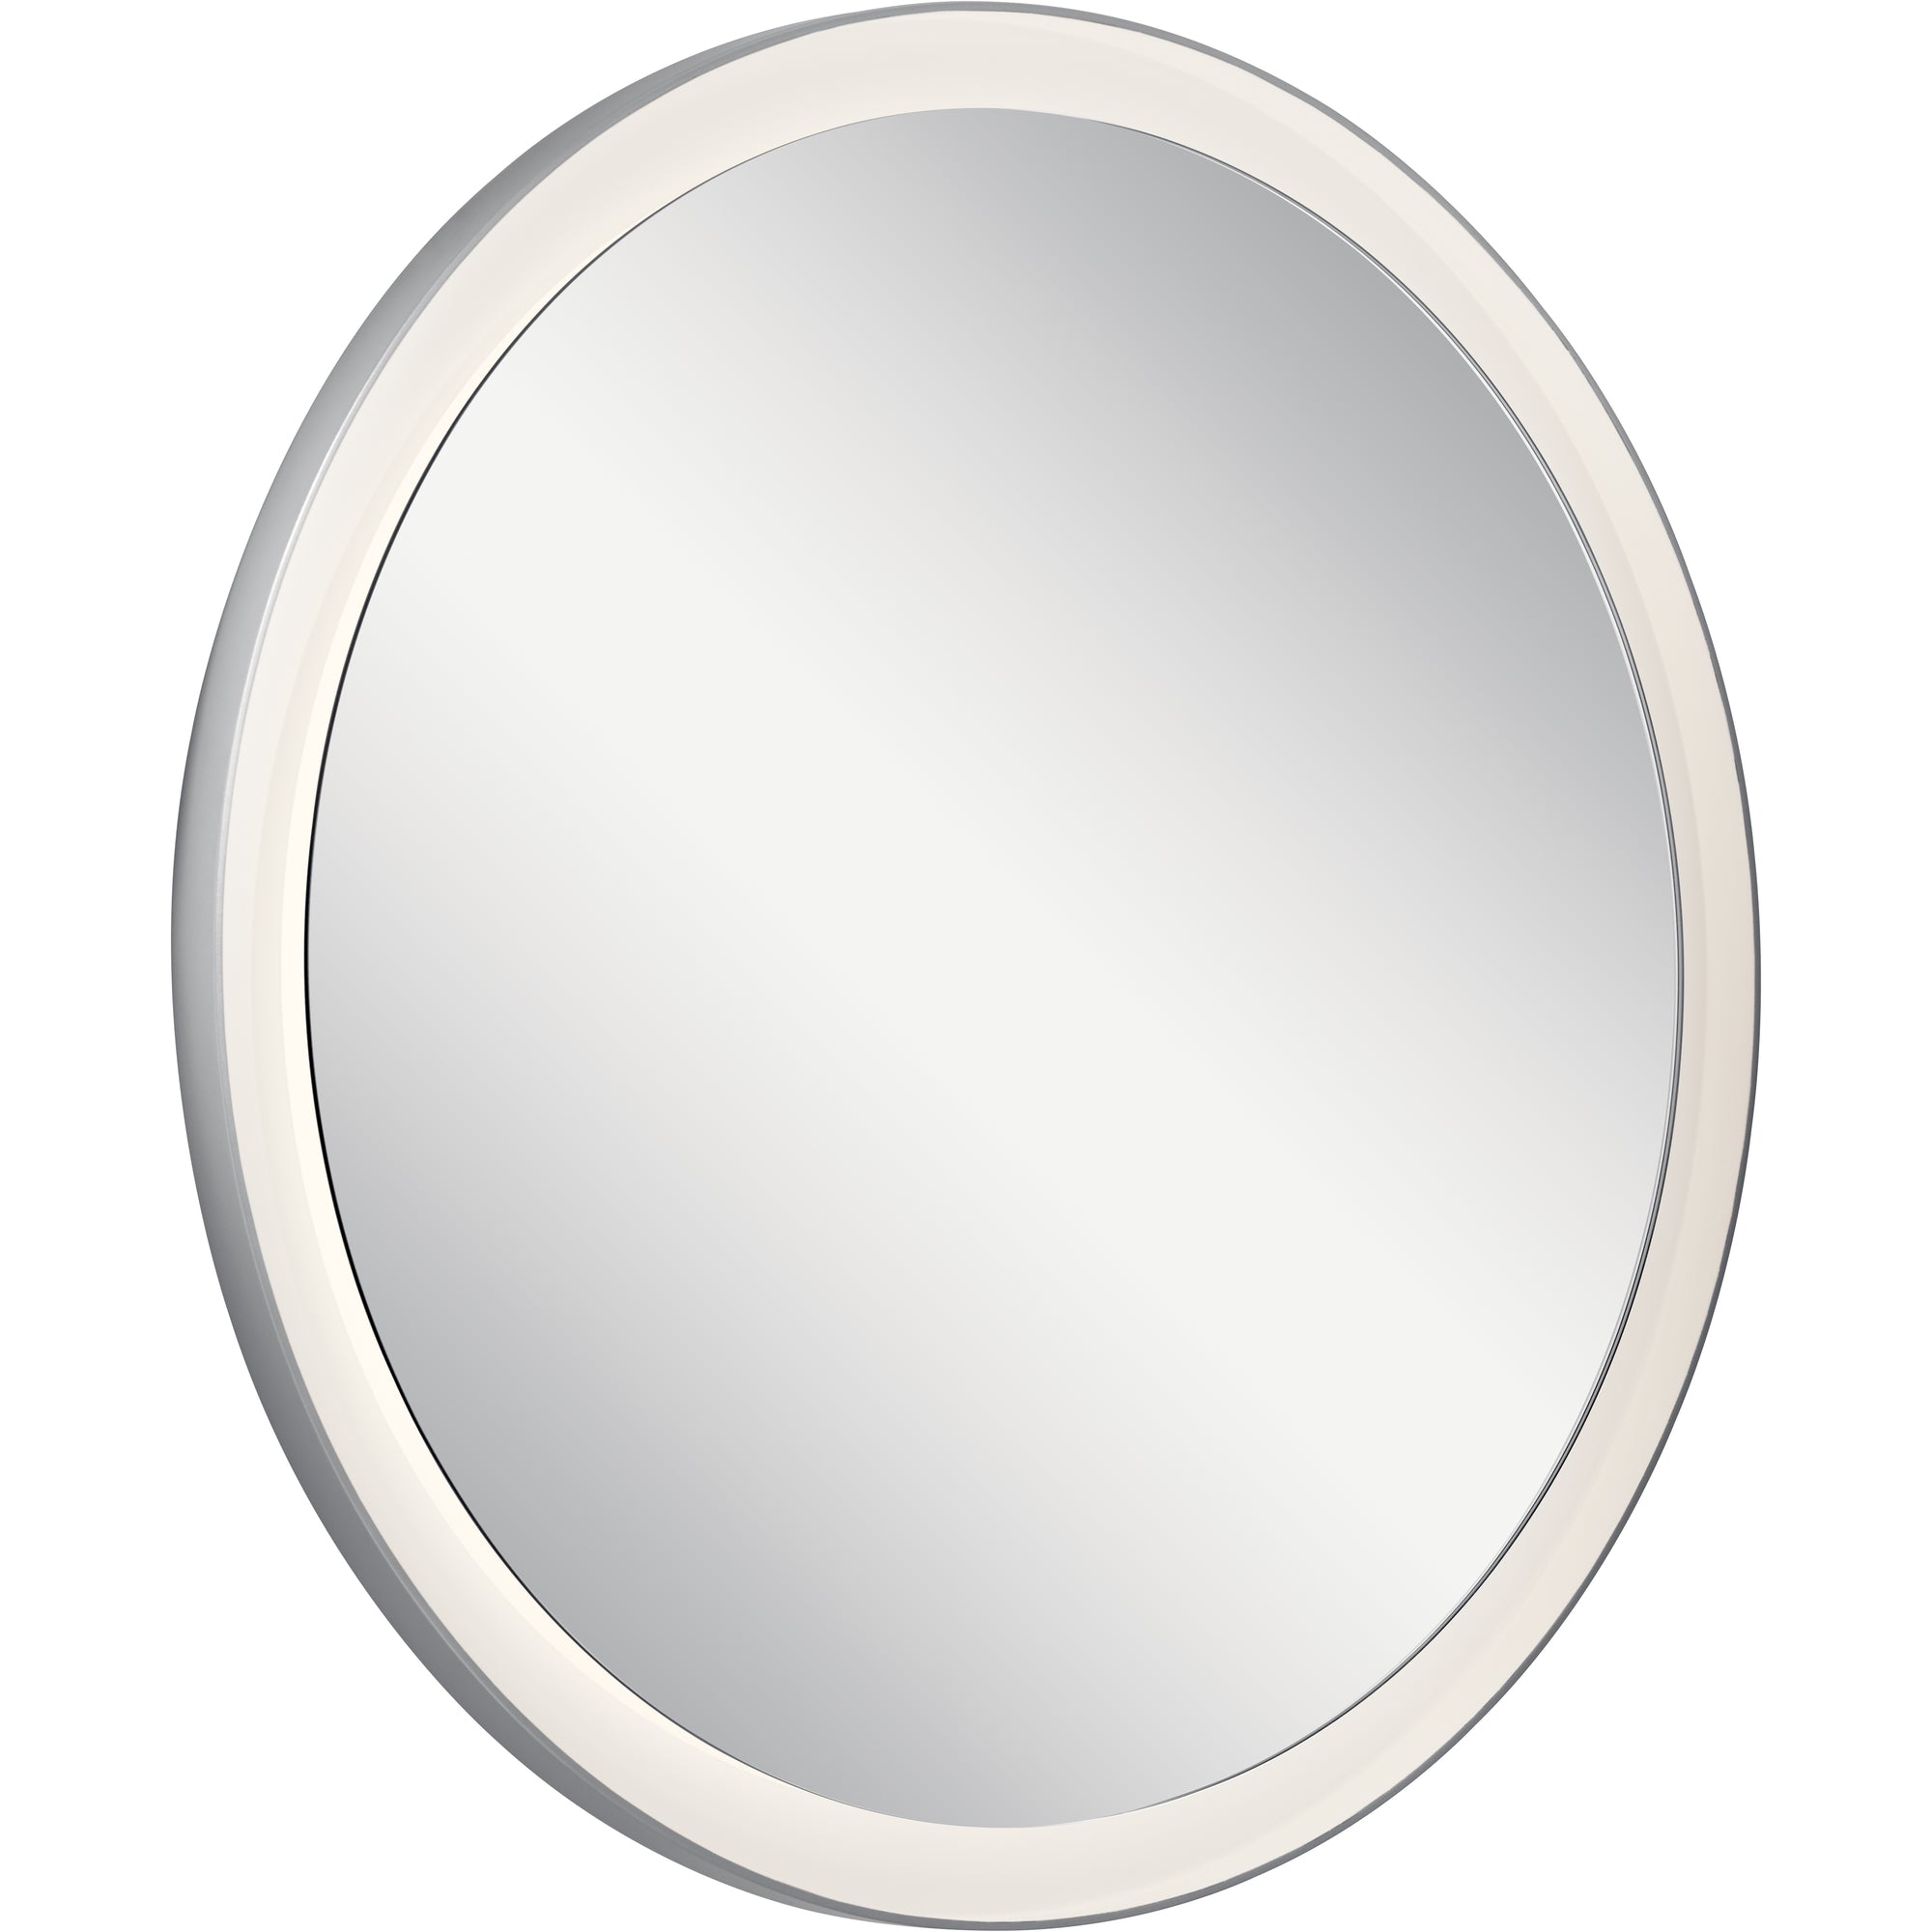 RYAME Lighting mirror Silver - 84170 | ELAN